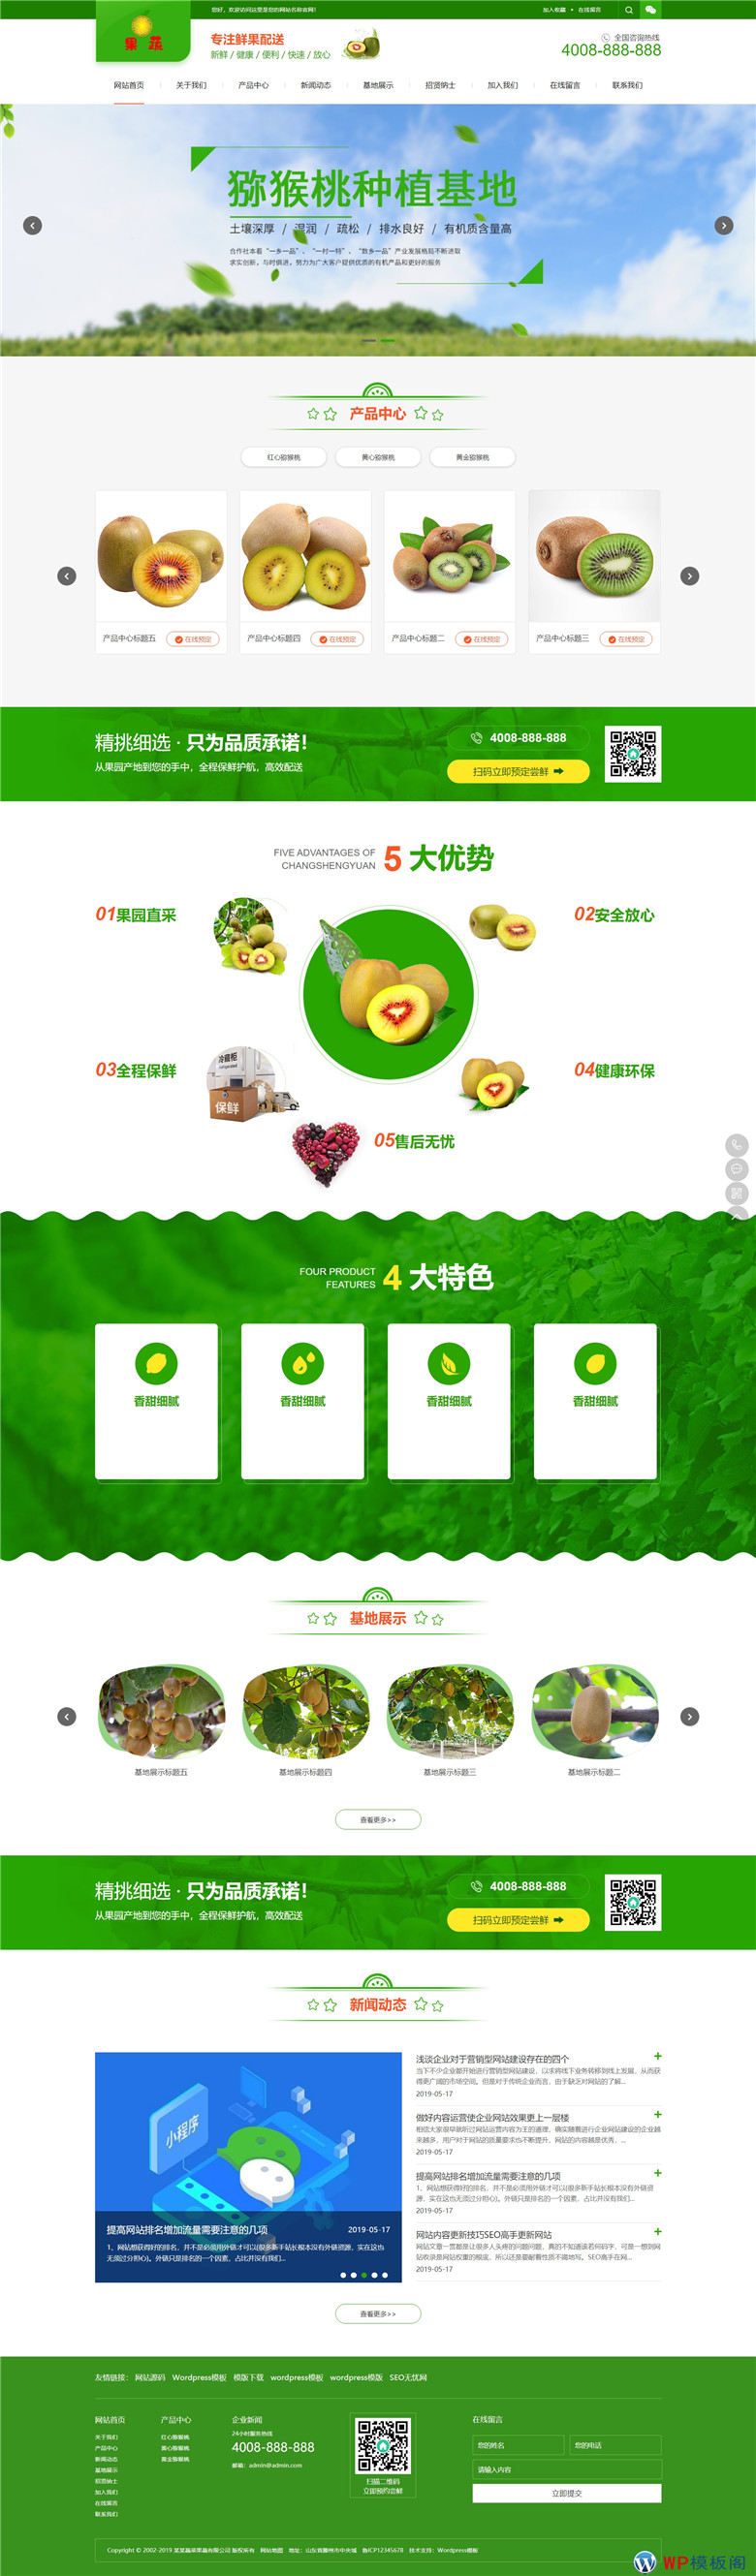 蔬菜果蔬鲜果配送绿色水果种植园网站制作_网站建设模板演示图